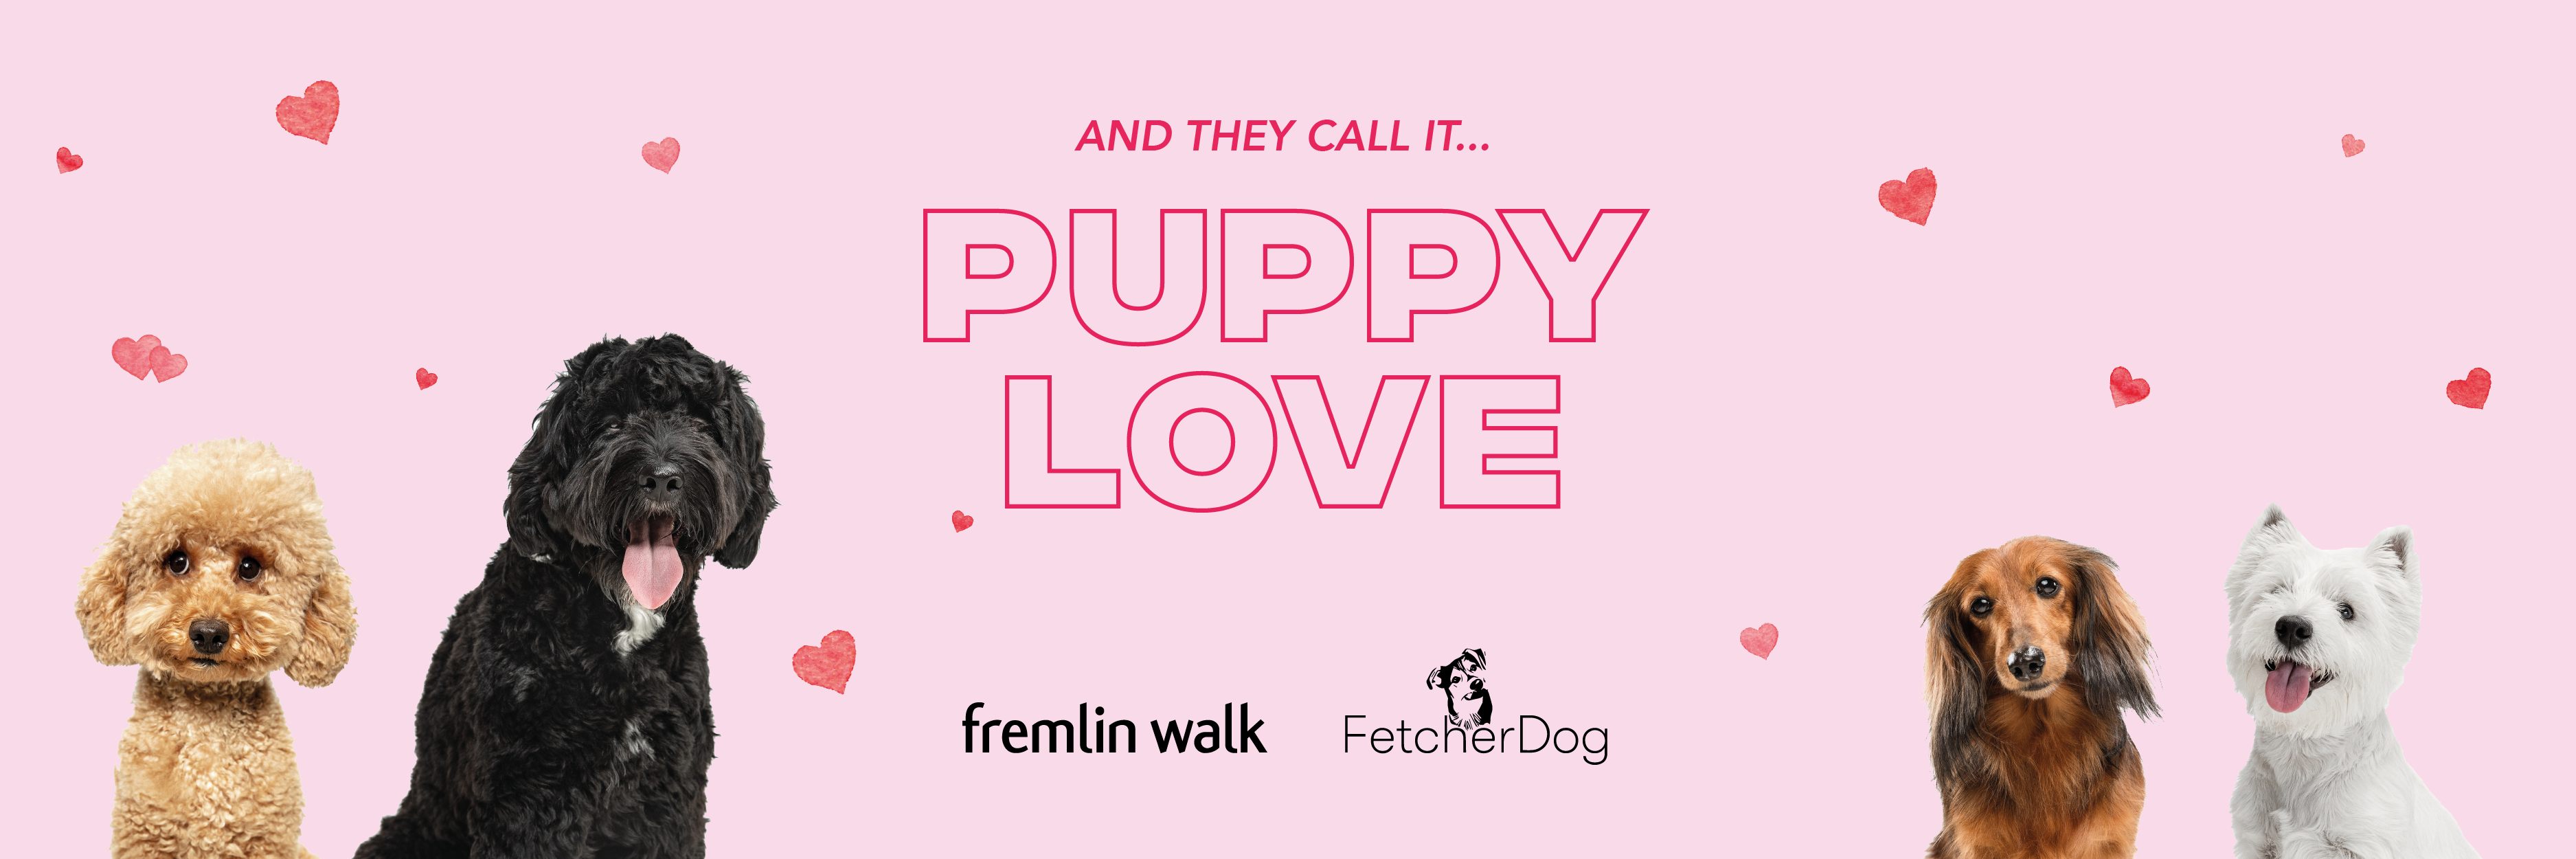 Puppy Love at Fremlin Walk